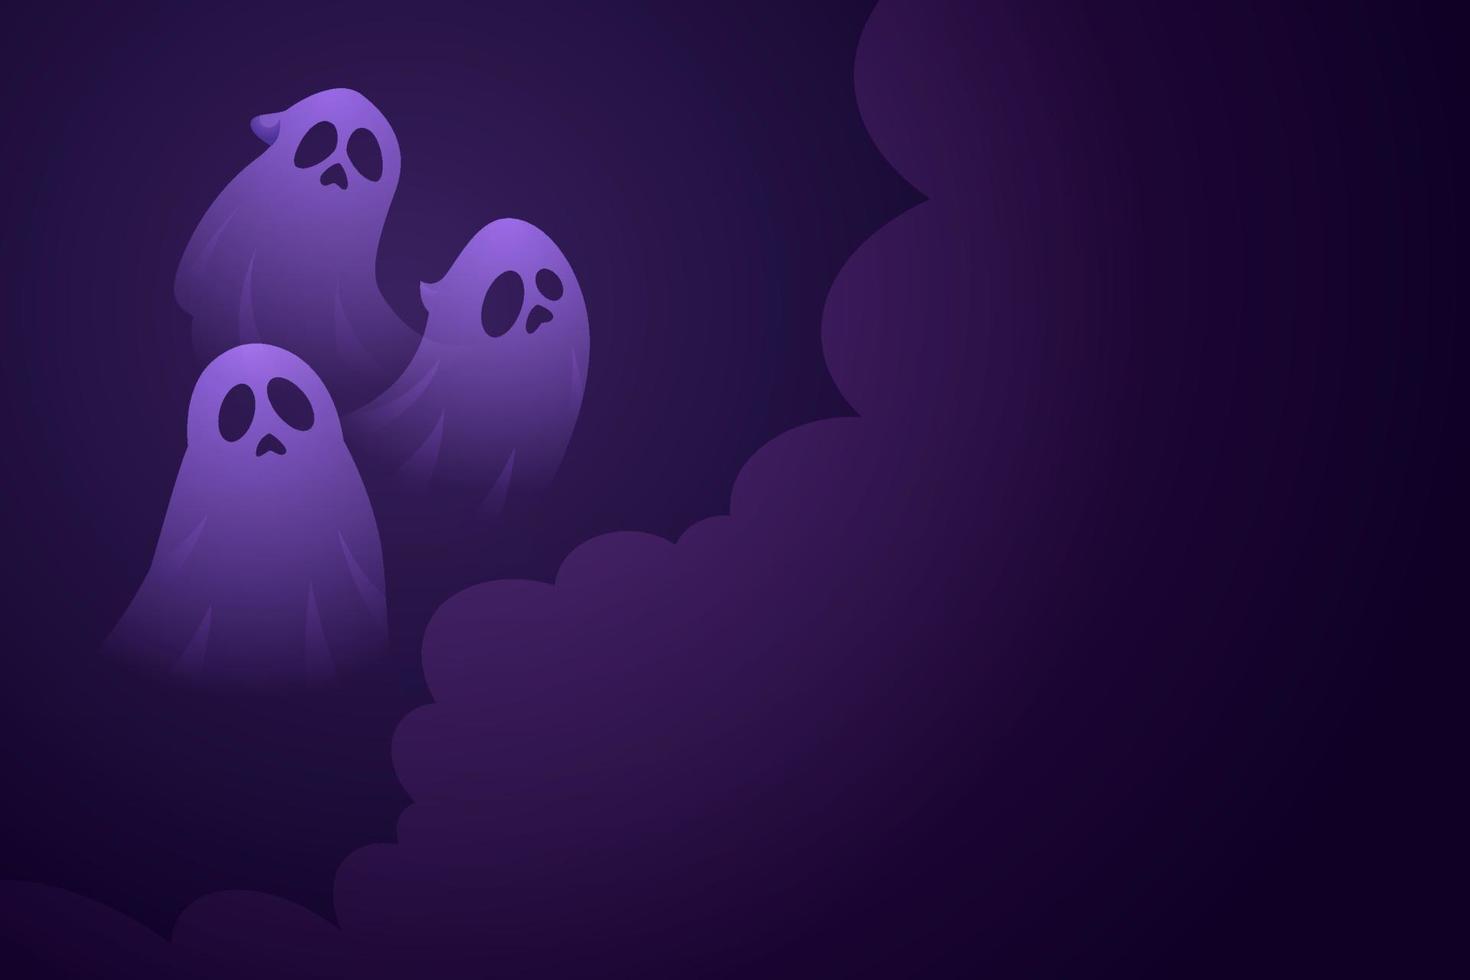 feliz hallowen banner vector, spooky hallowen plantilla de fondo con ilustración de fantasmas para tarjetas de felicitación o publicación en medios sociales vector